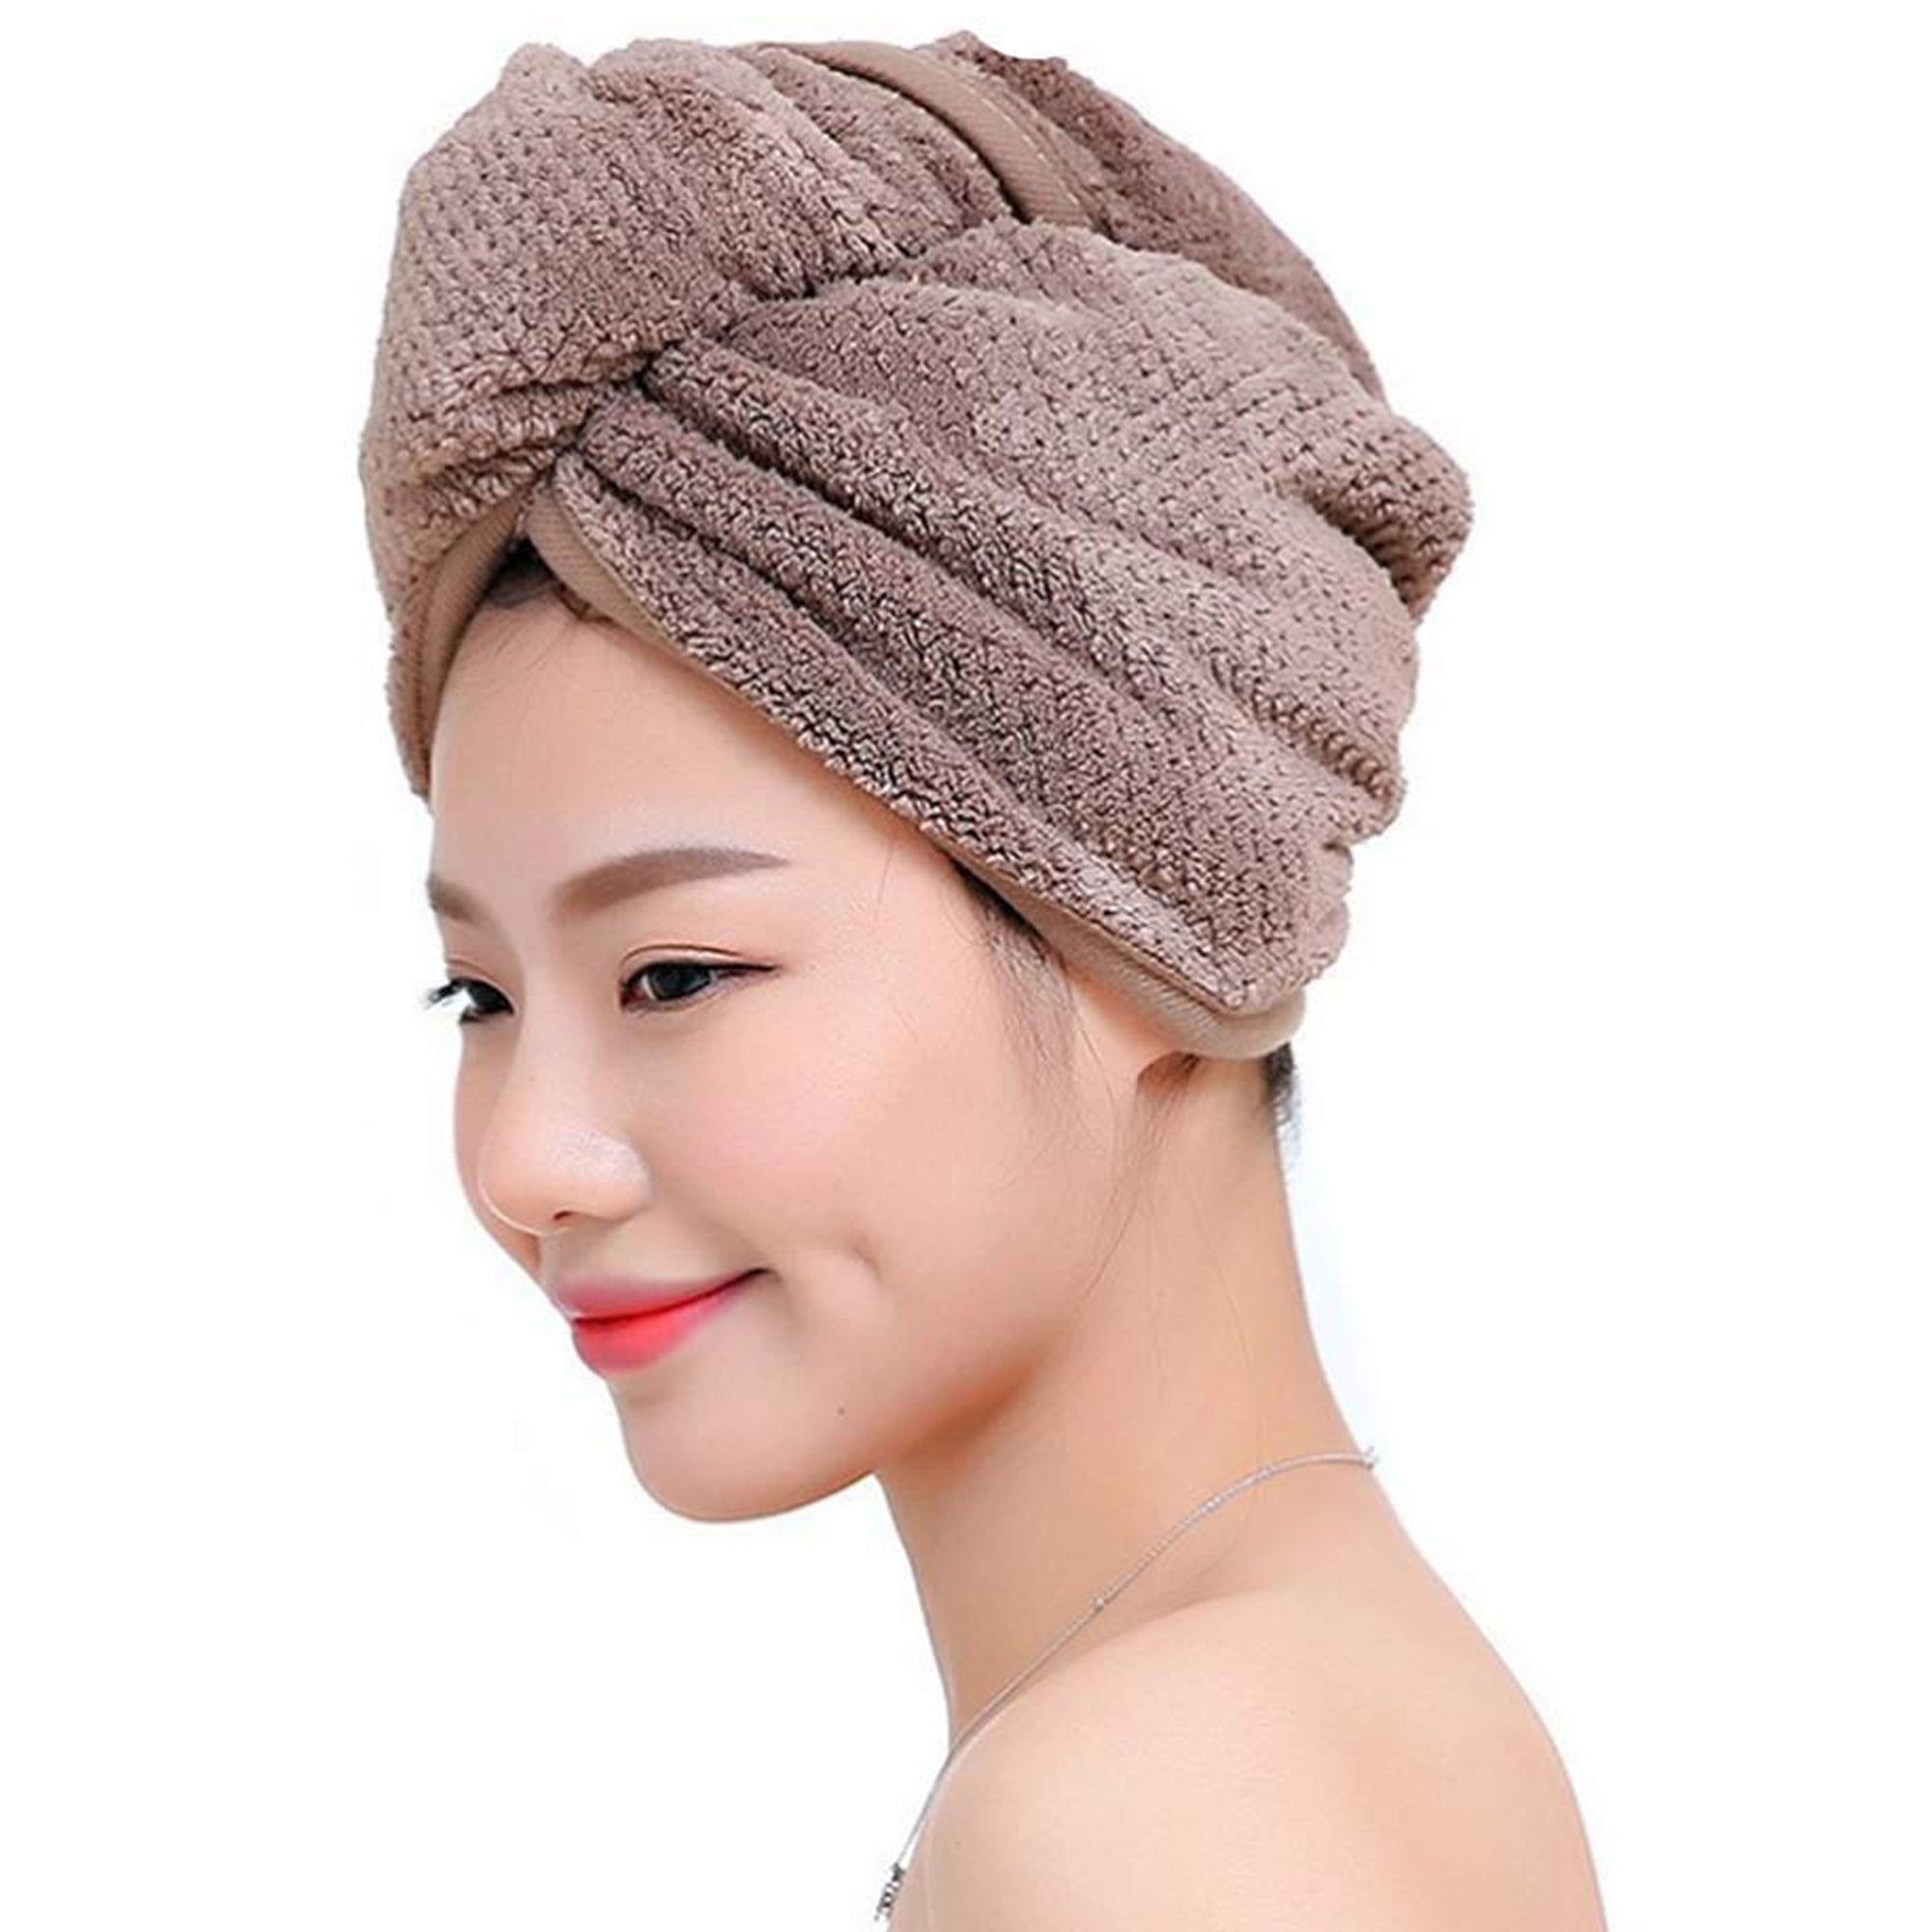 1*Turban Towel Twist Hair Quick Dry Microfiber Bath Towel Hair Wrap Cap Hat Spa 